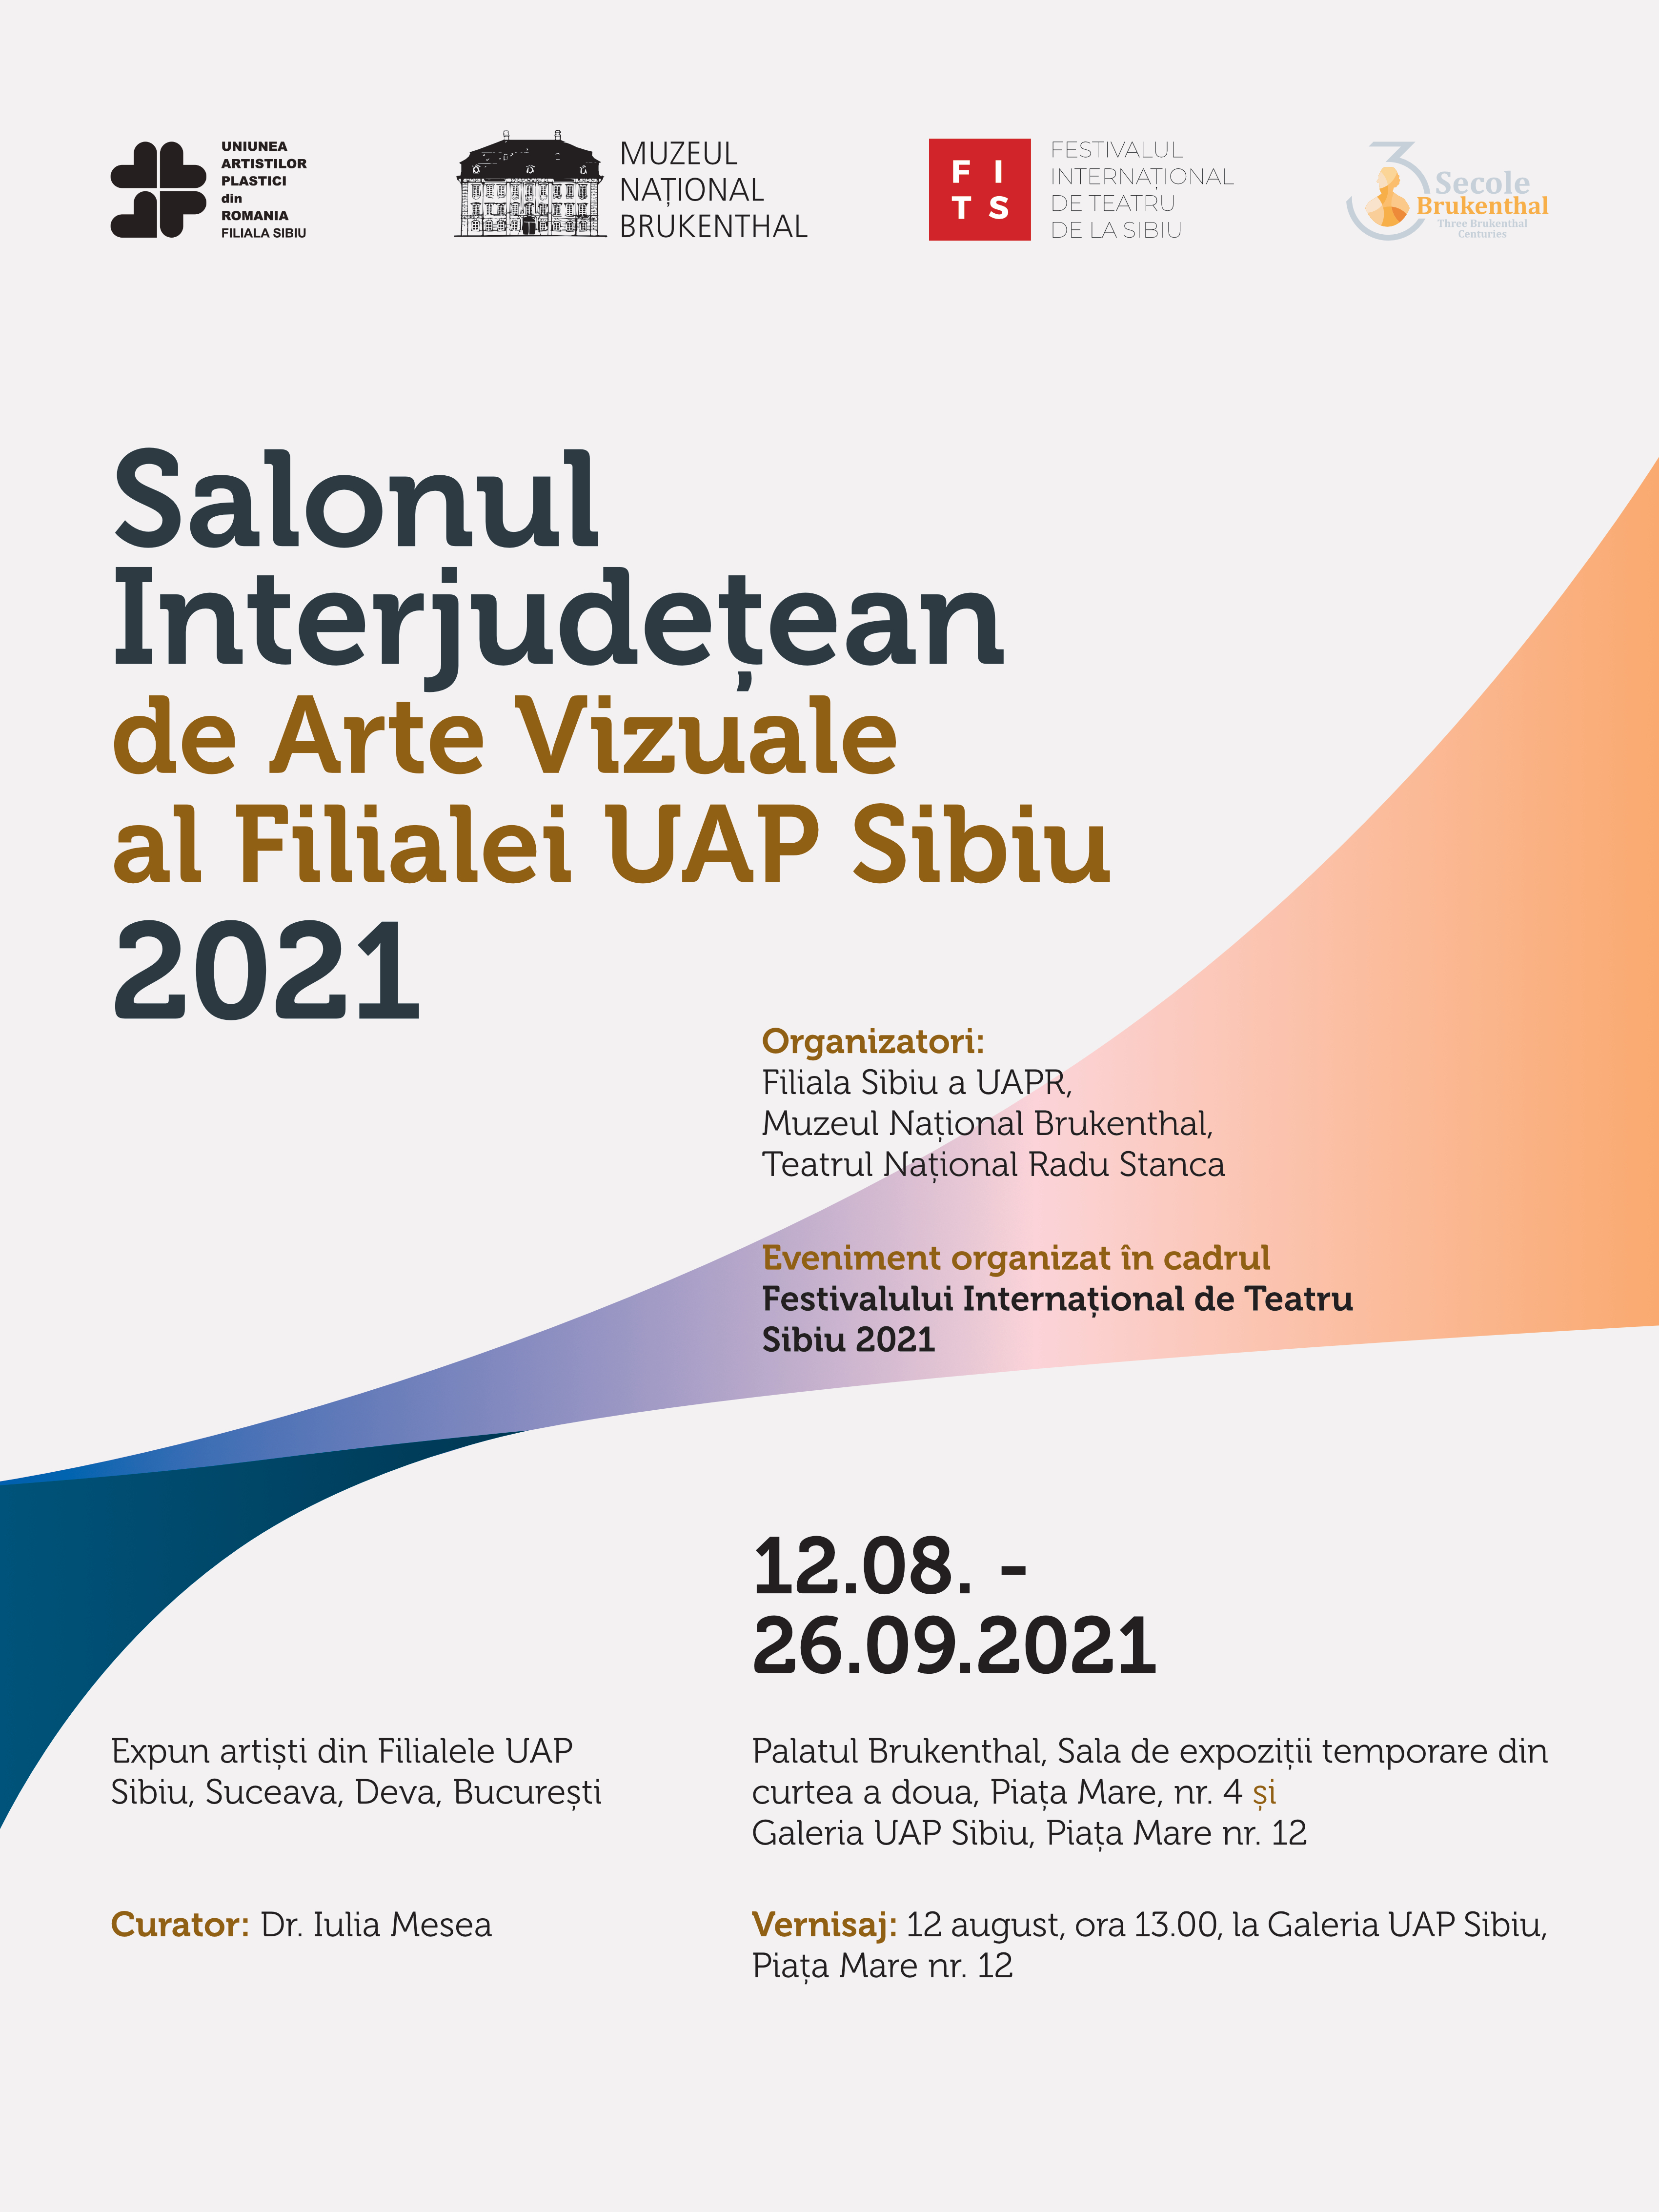 Salonul Interjudețean de Arte Vizuale al Filialei UAP Sibiu 2021 